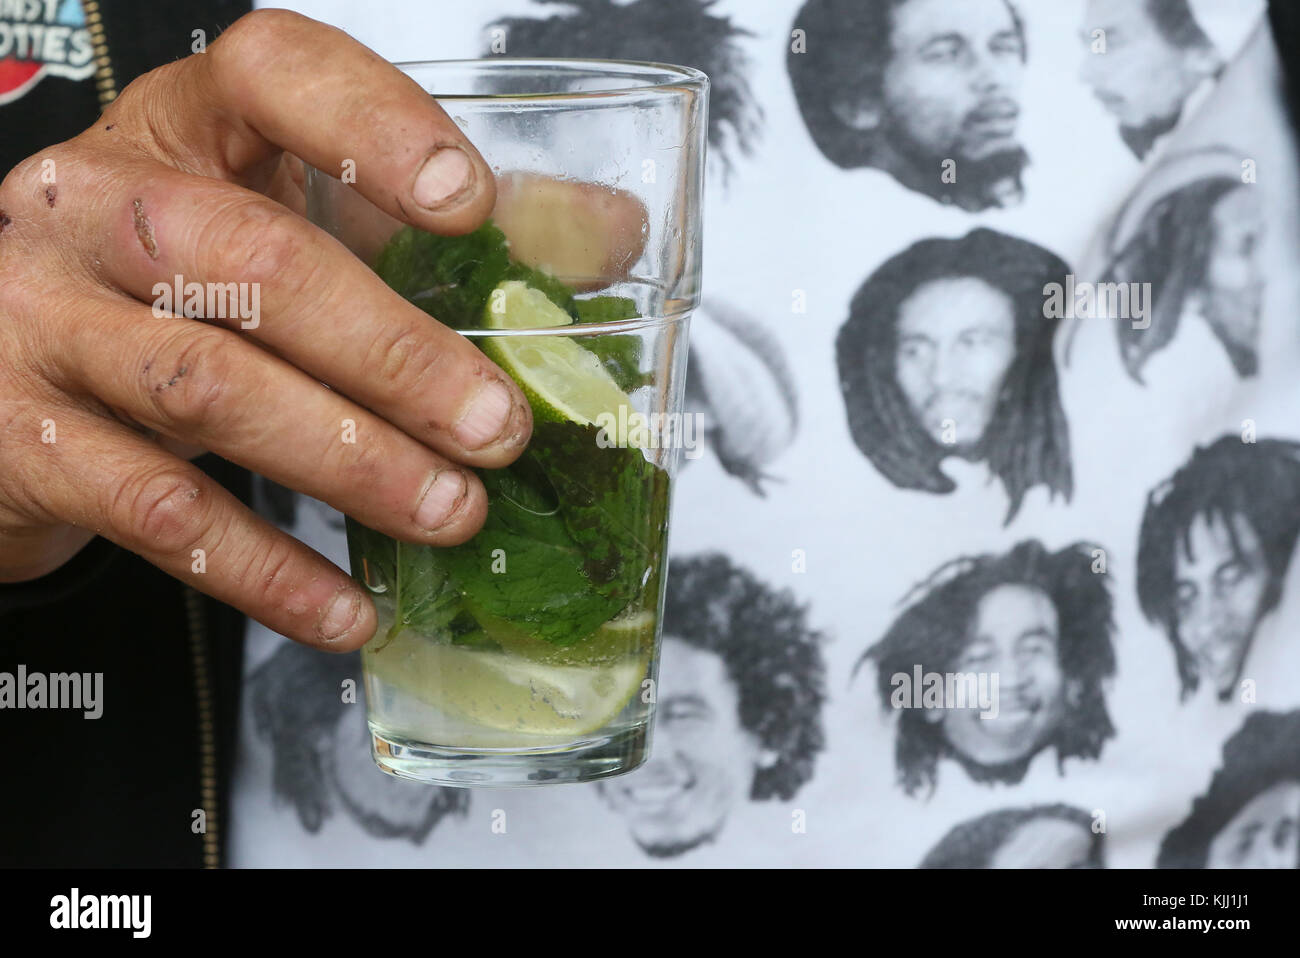 Un homme portant un t-shirt Bob Marley & boire un mojito. La France. Banque D'Images